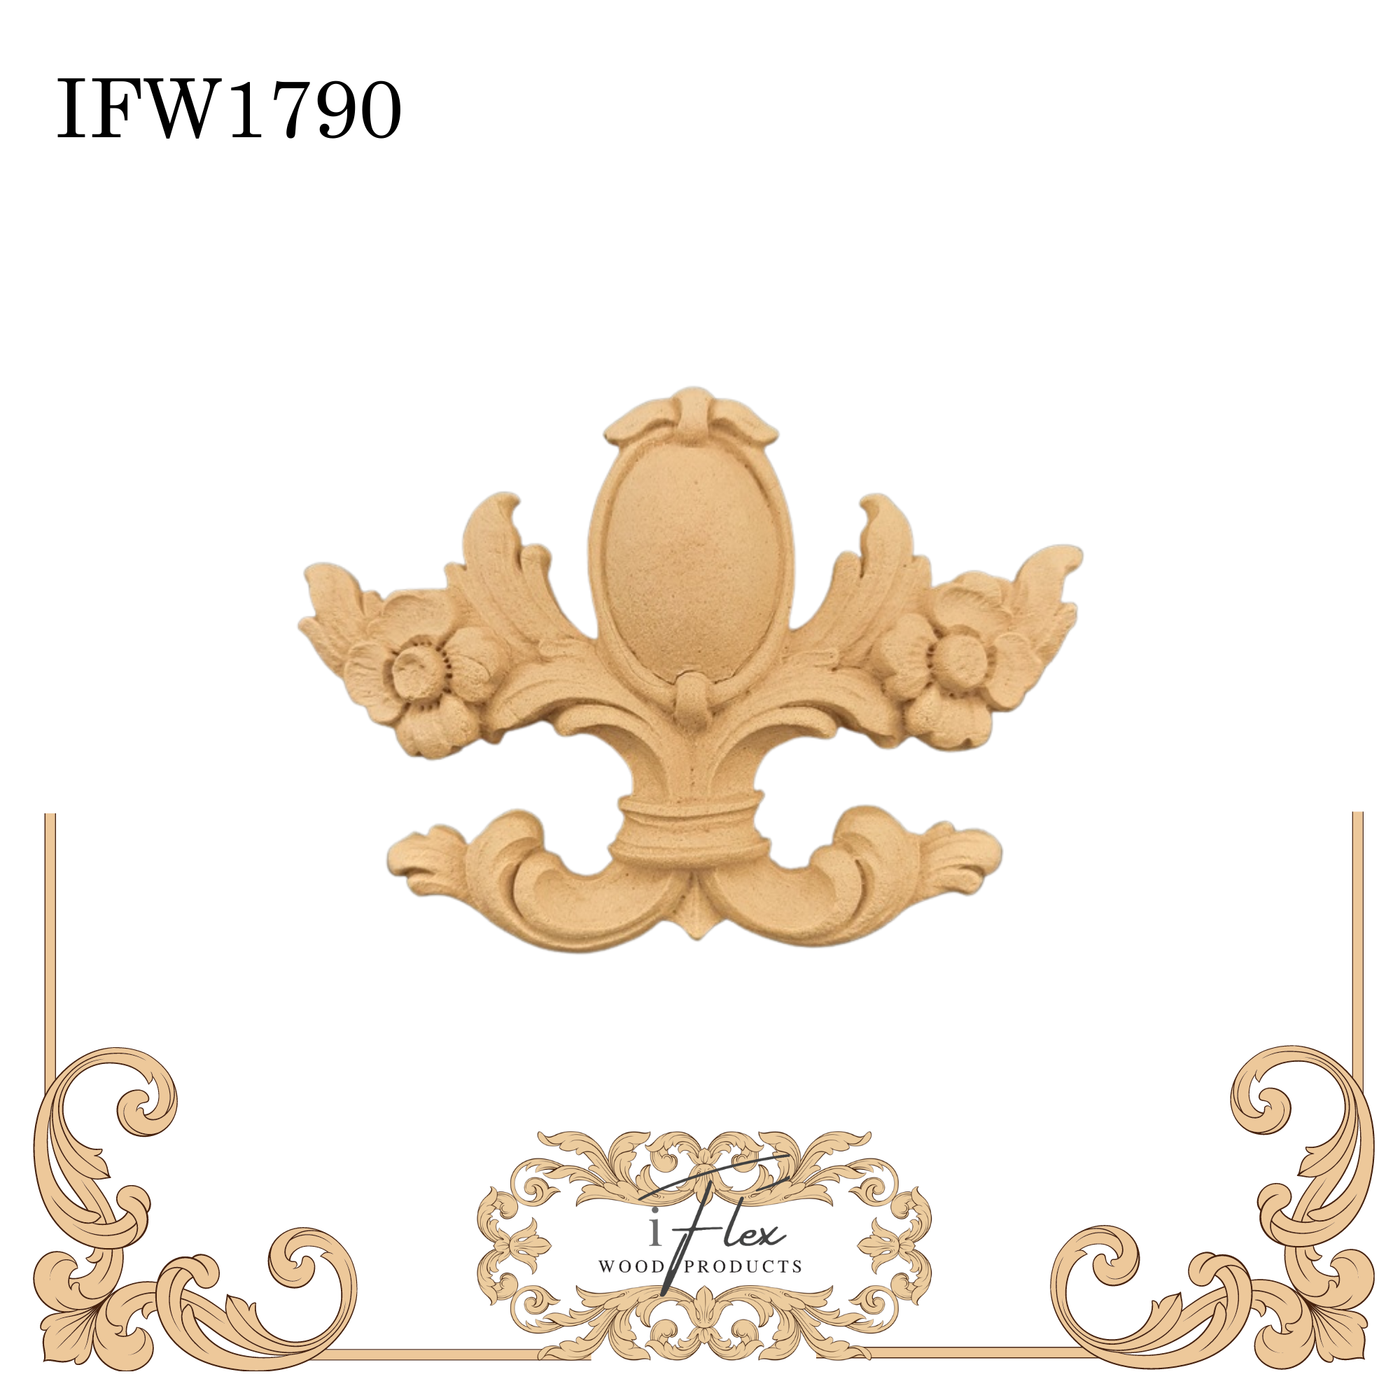 IFW 1790